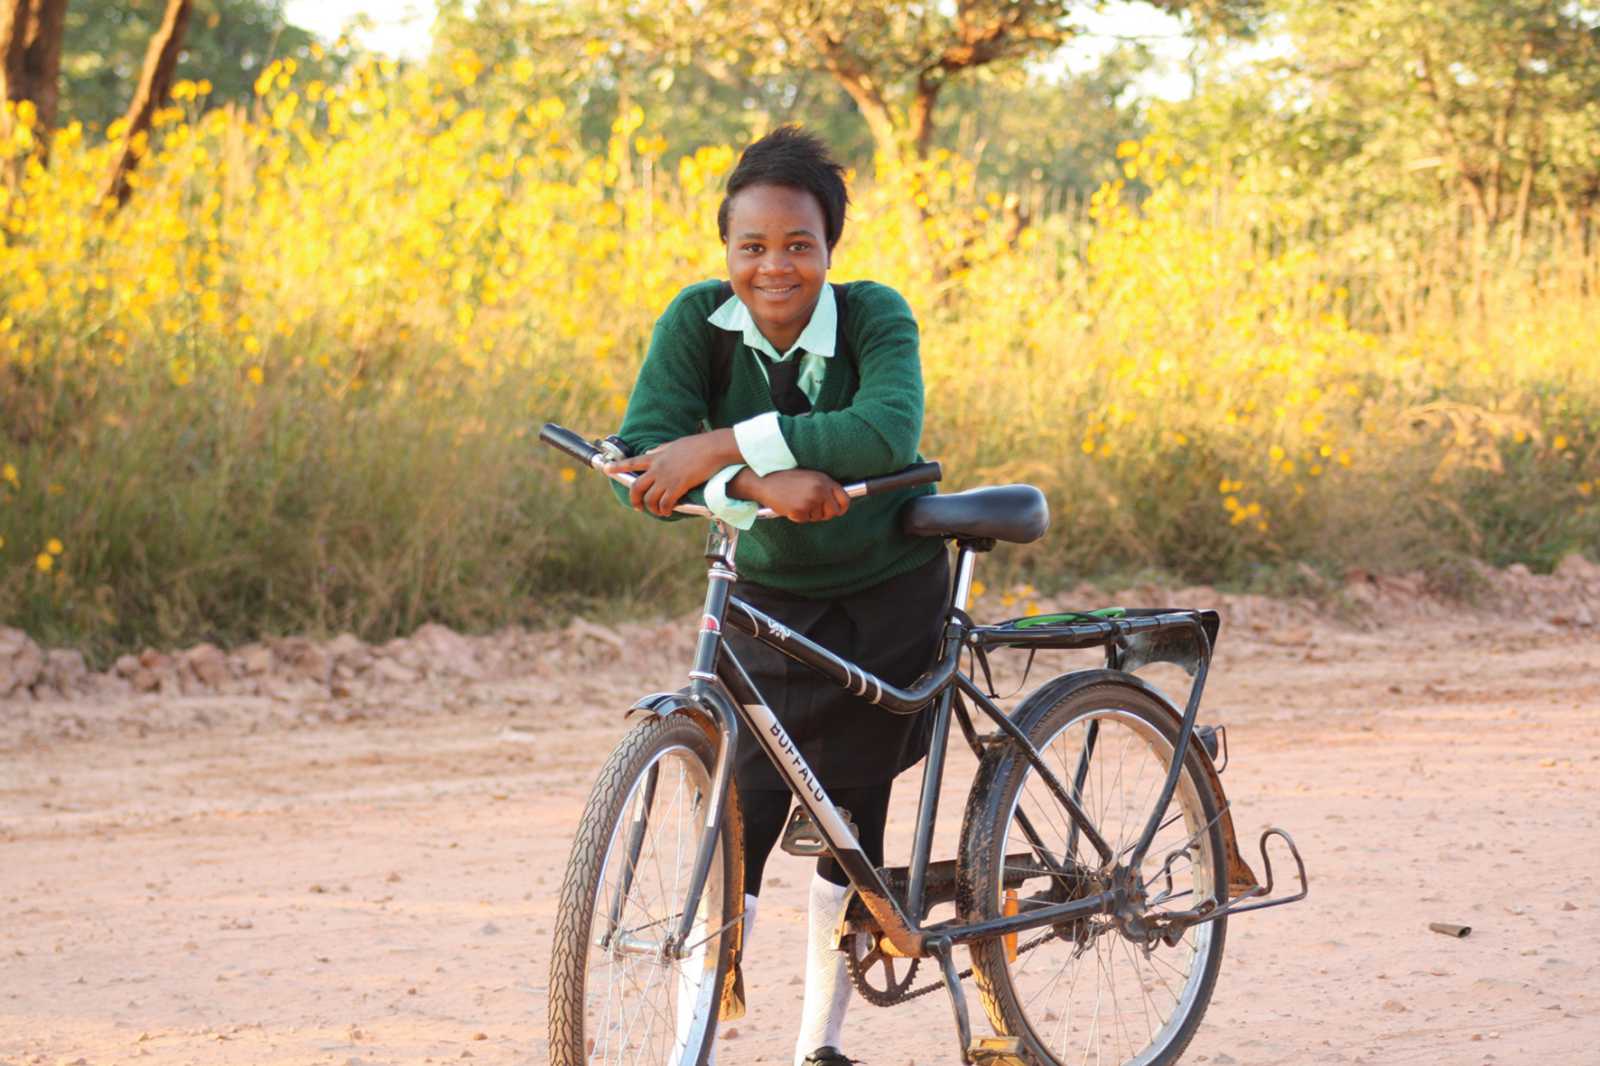 World Bicycle Relief erleichtert Kindern in Entwicklungsländern durch Fahrräder den Schulbesuch. Die FH Münster unterstützt die Spendenorganisation durch ihren Fahrradwettbewerb. (Foto: World Bicycle Relief/Matt Pierce)